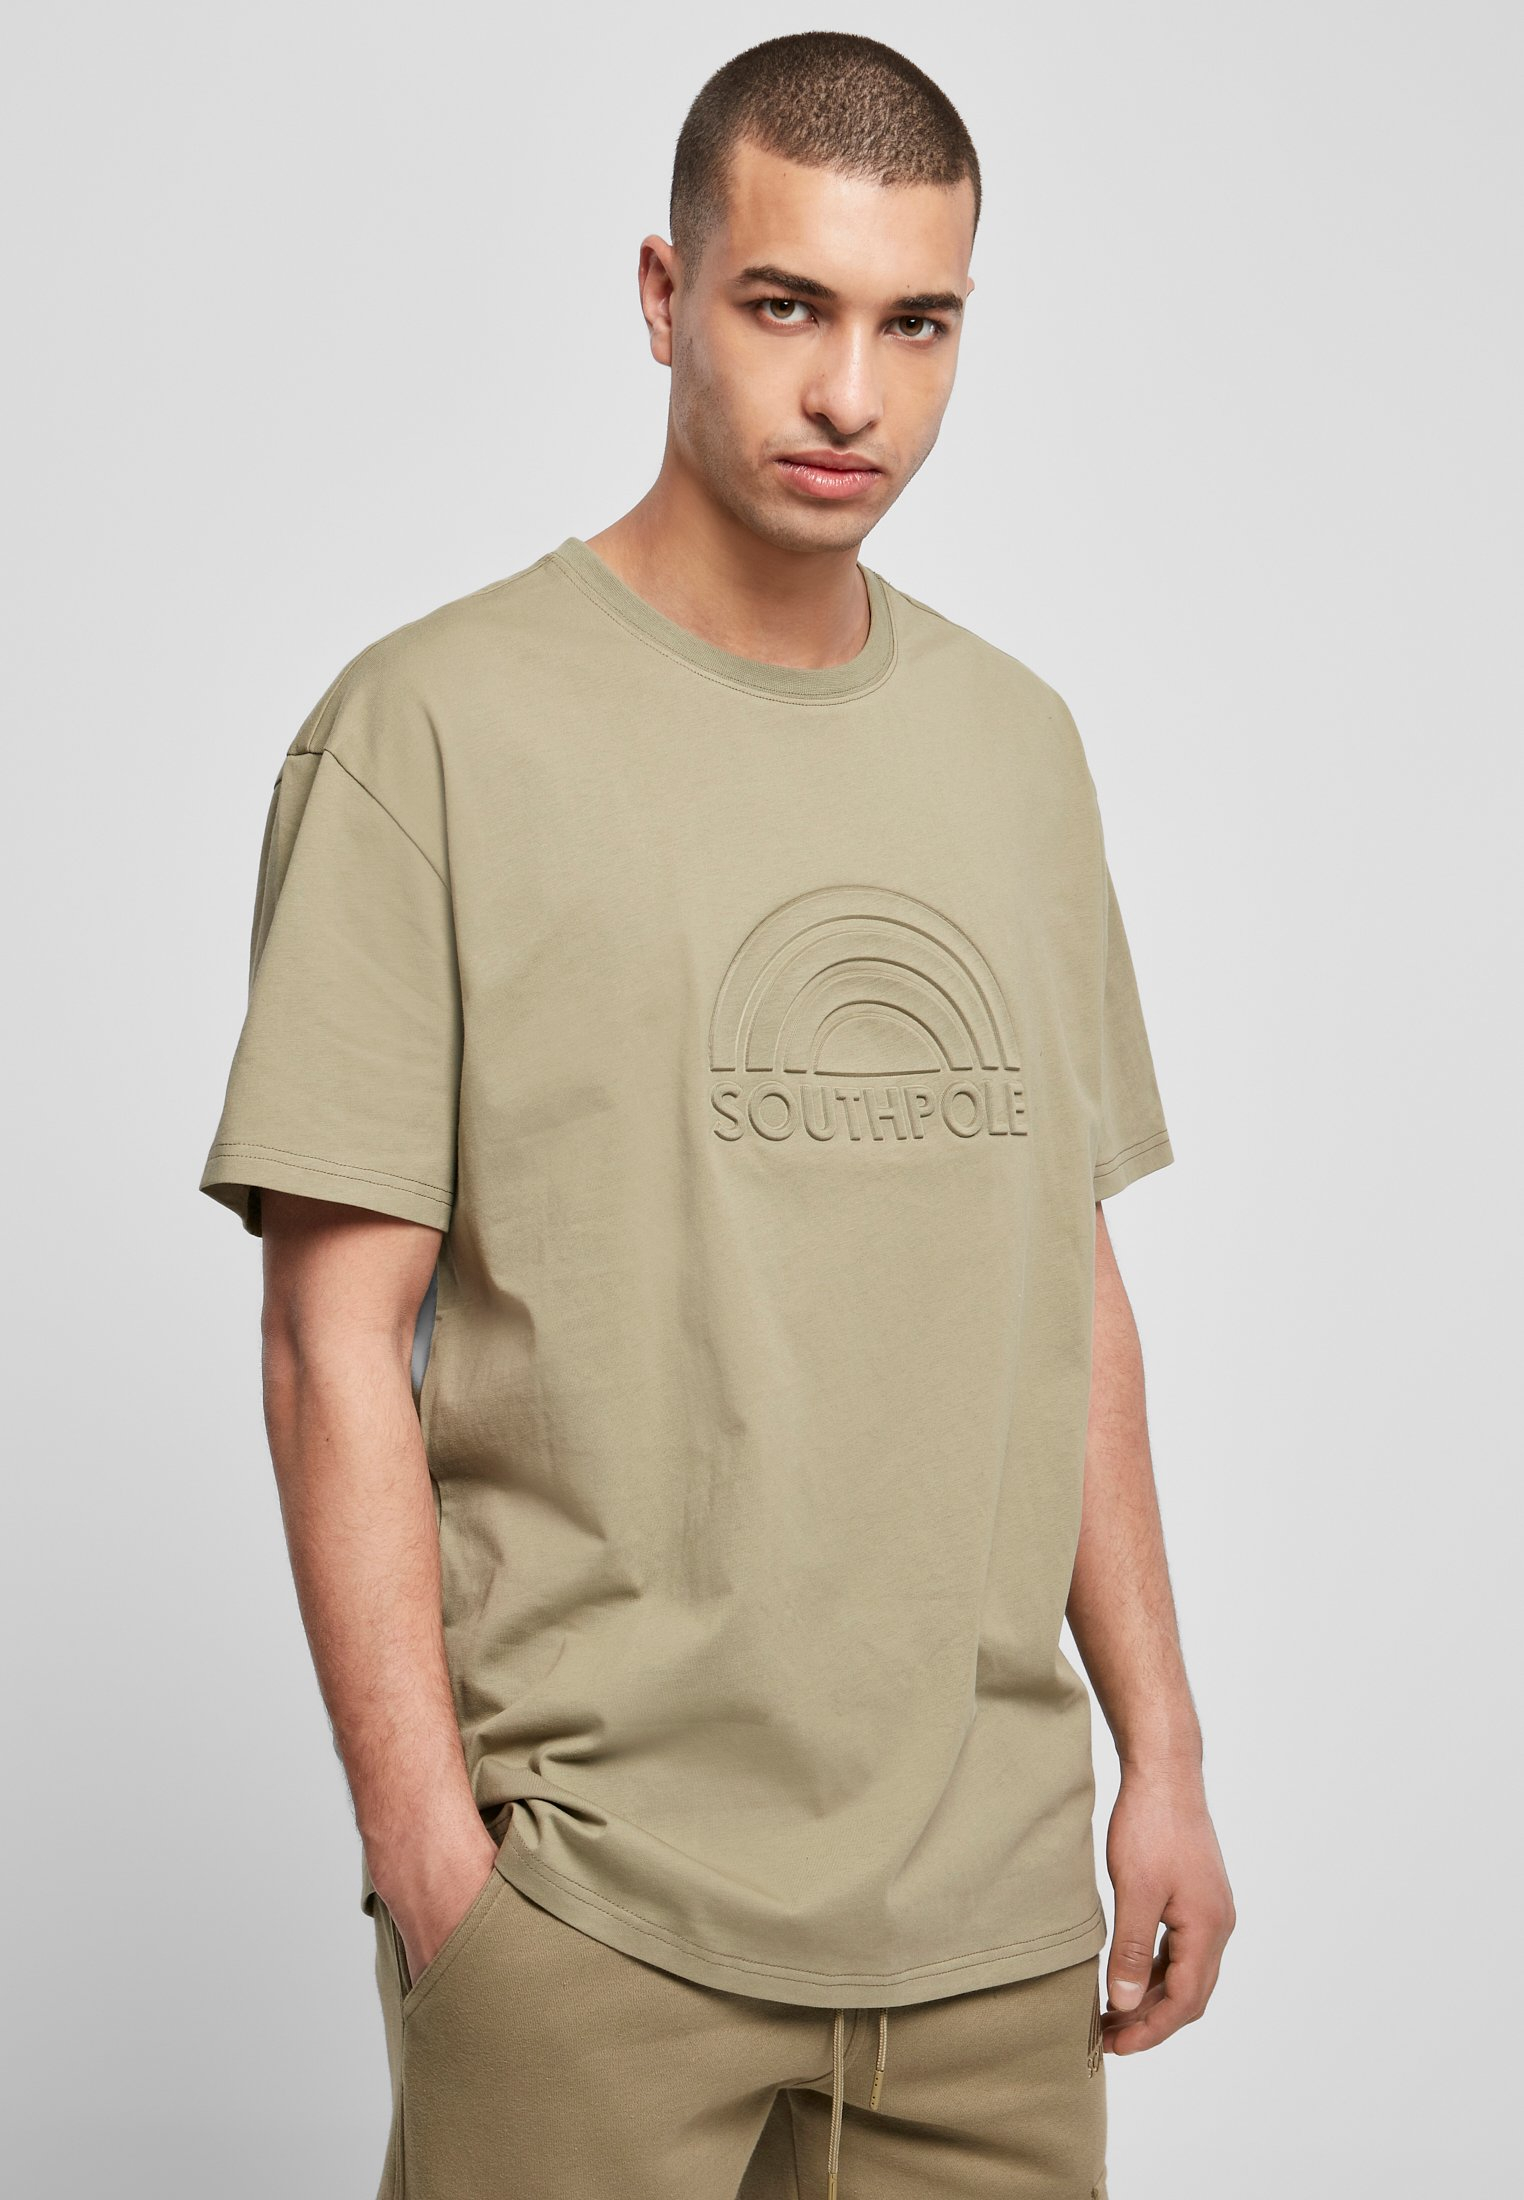 Southpole 3D T-shirt in khaki color